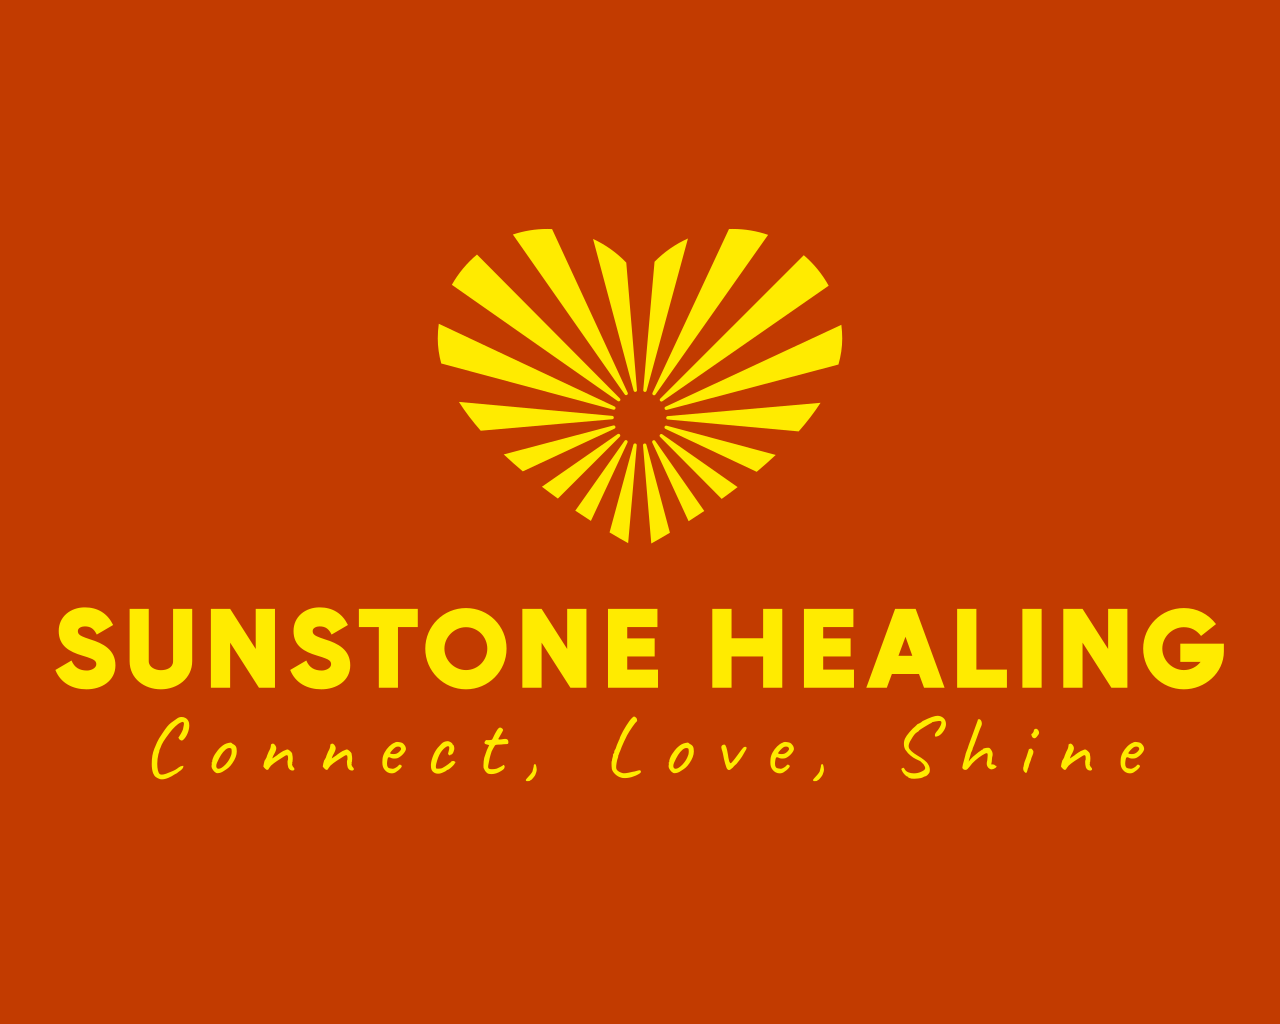 Sunstone Healing